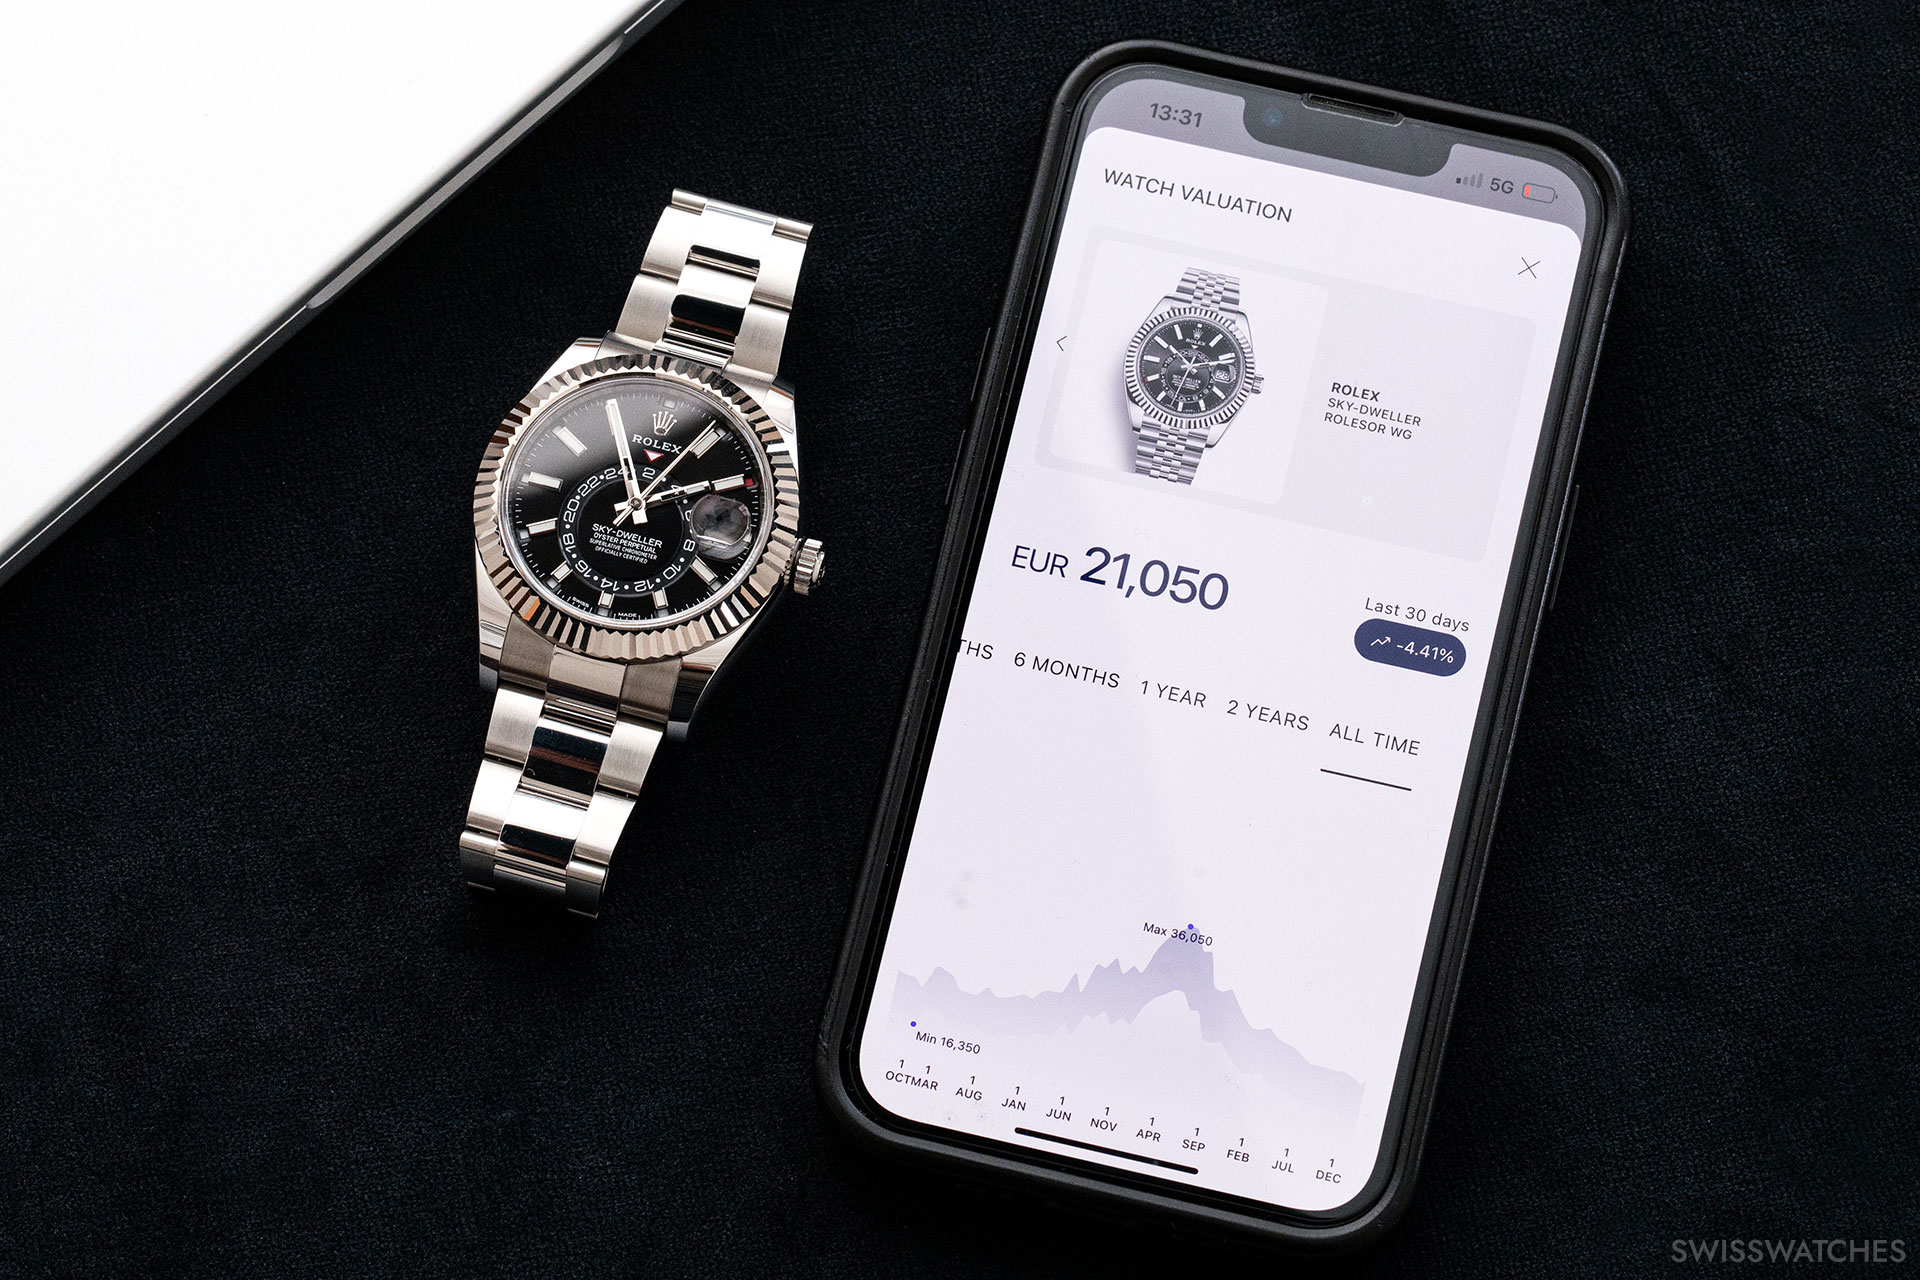 bucherer-watch-wallet-app-dienst-marktwert